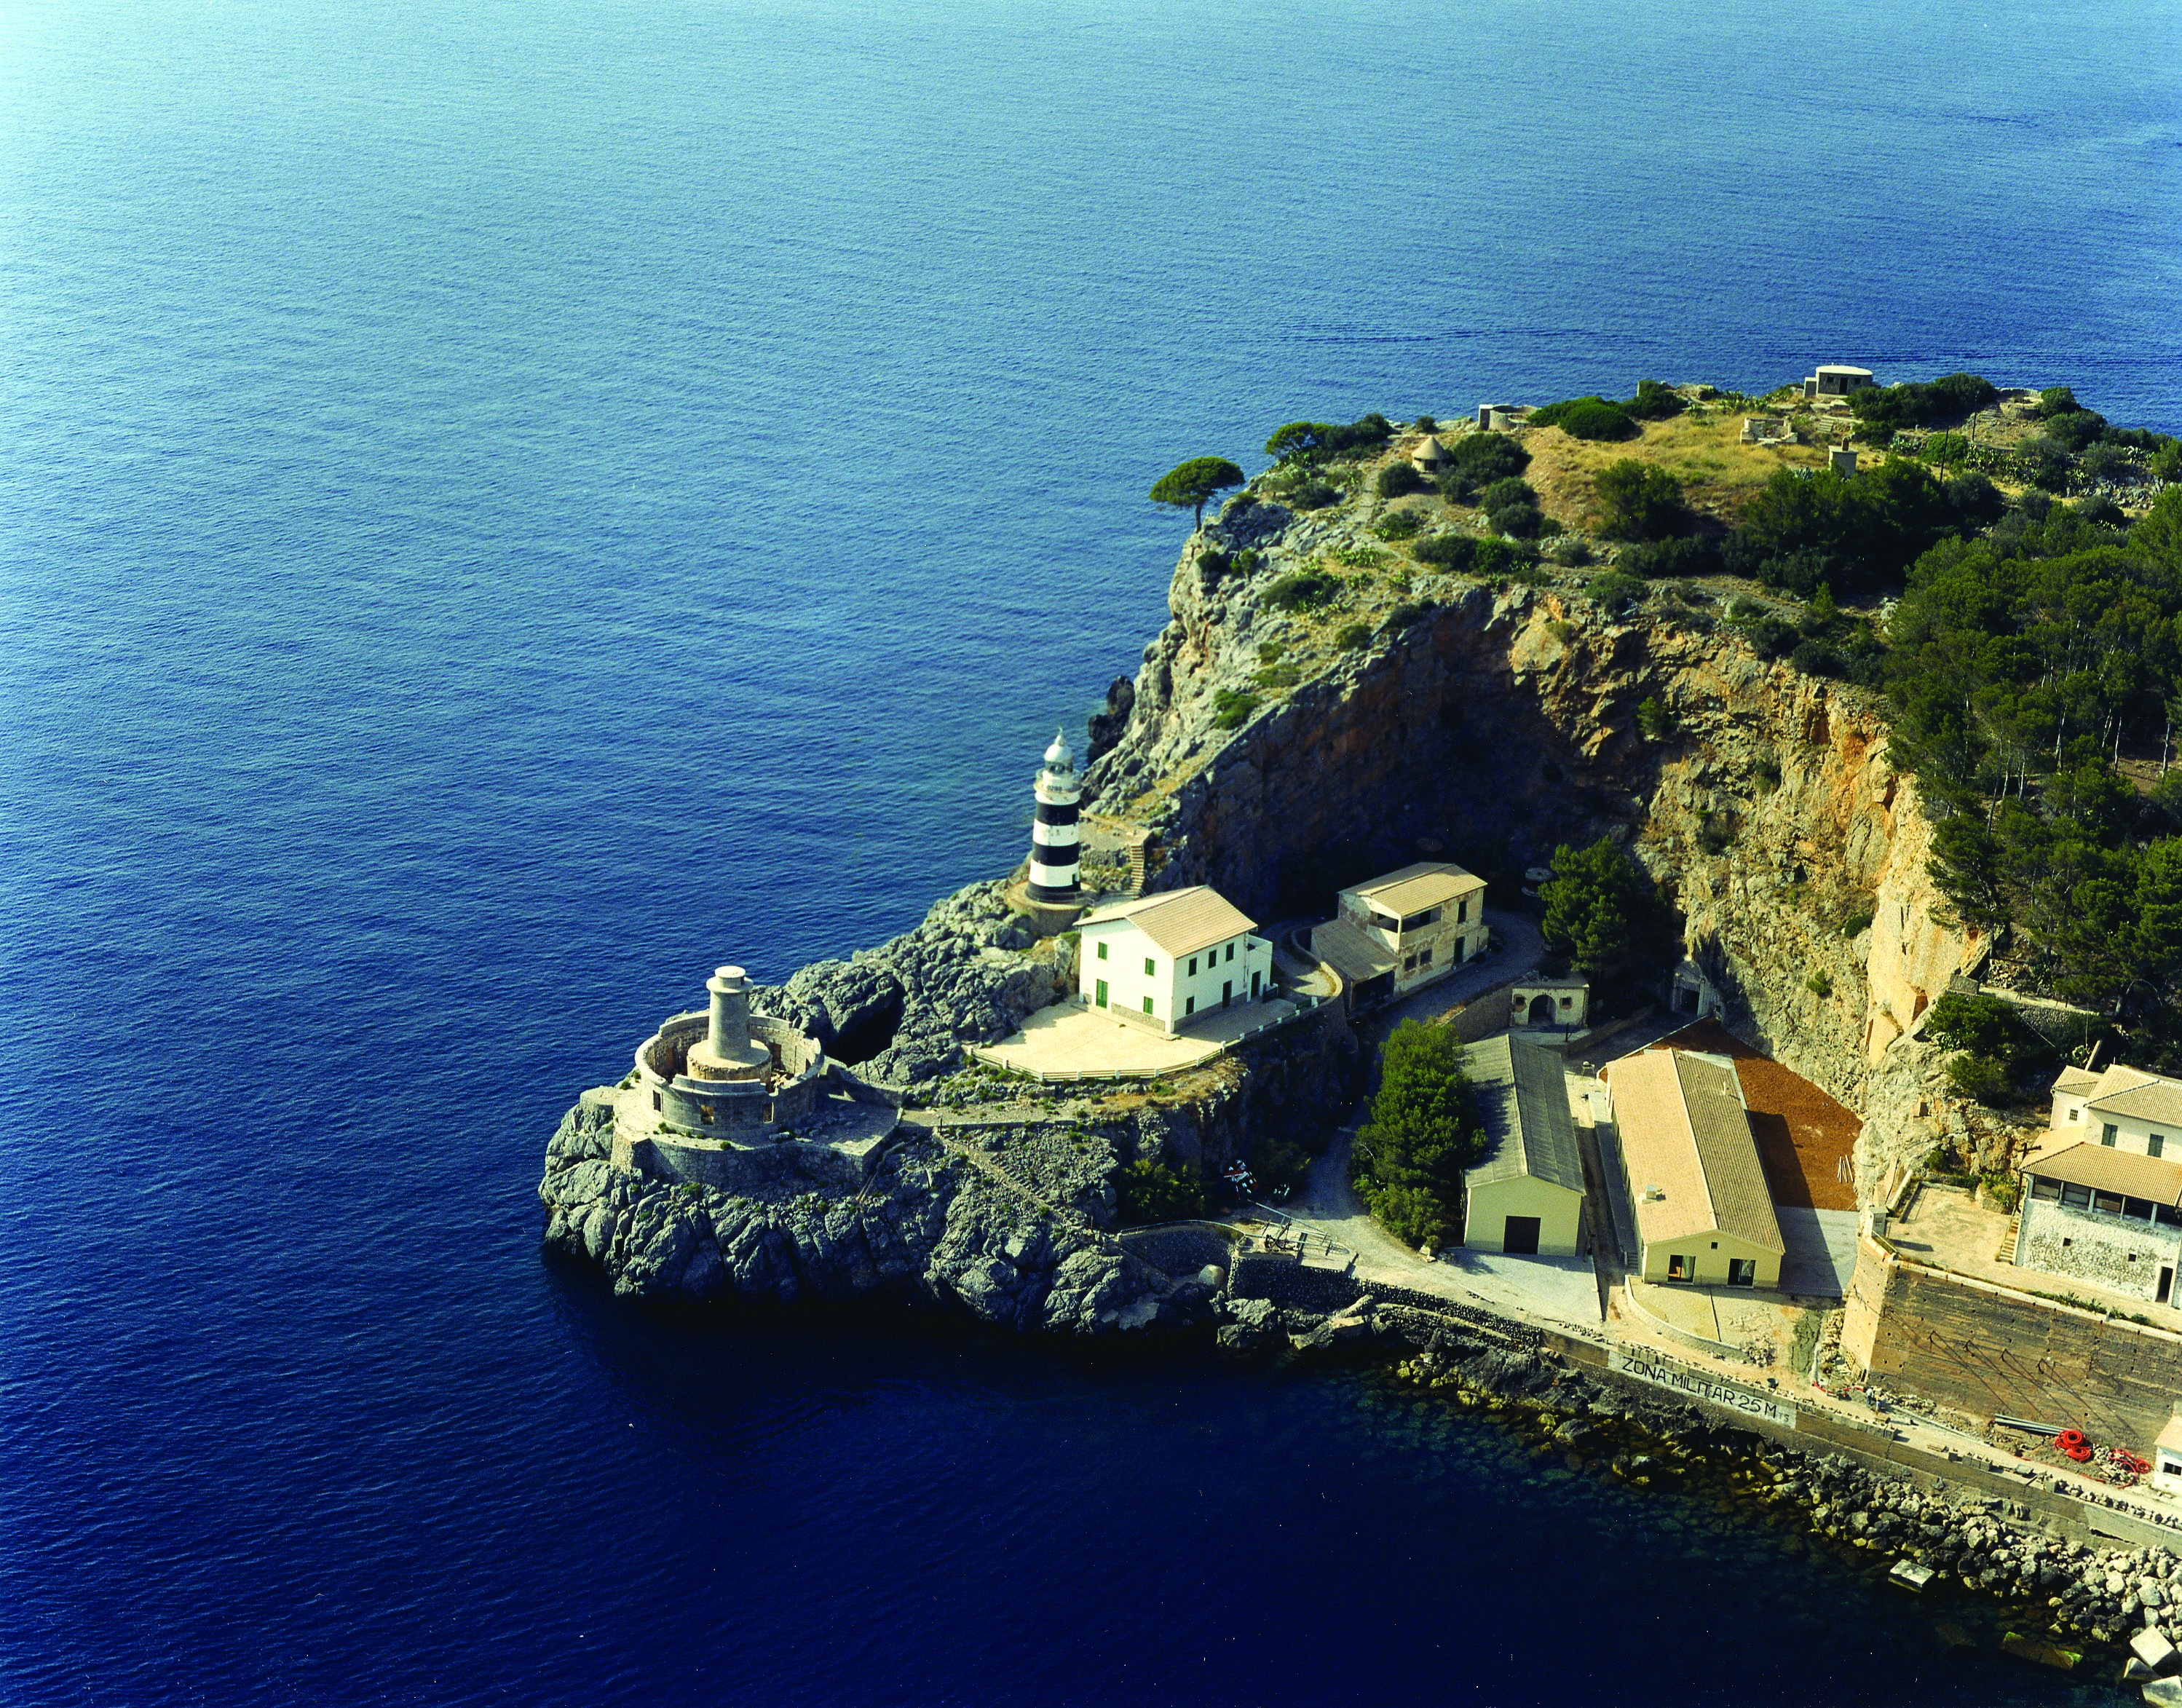 Restoration of the floor slabs of La Creu lighthouse in port de Sóller